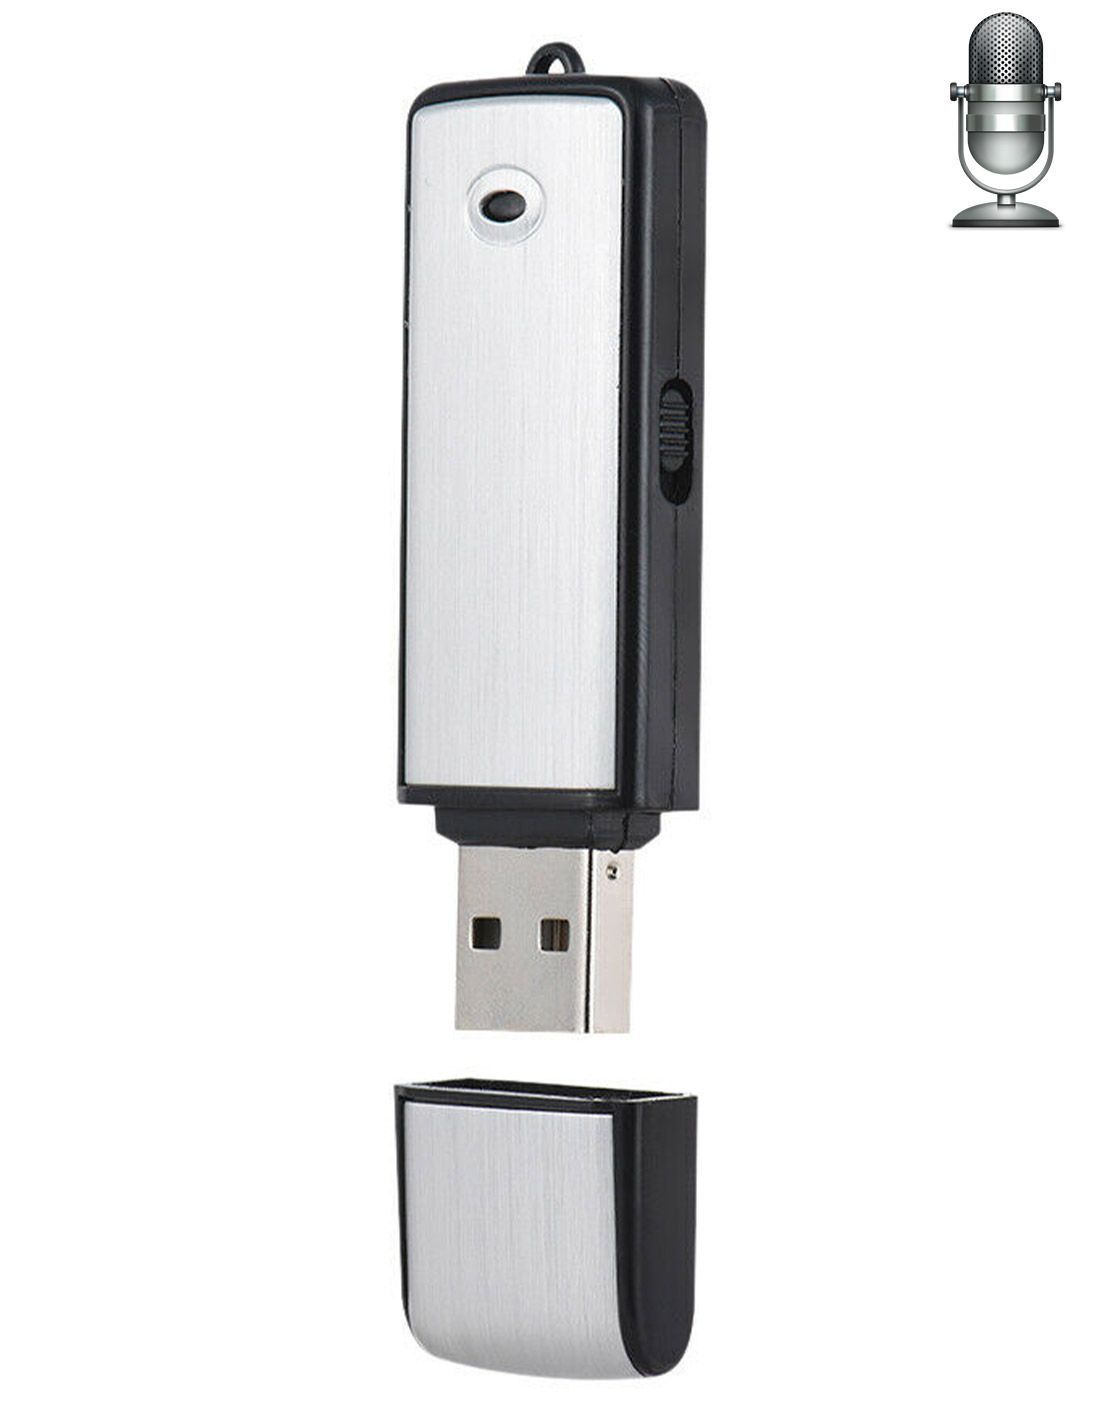 Clés USB et cartes mémoires - Stockage - Page 4 - La Poste